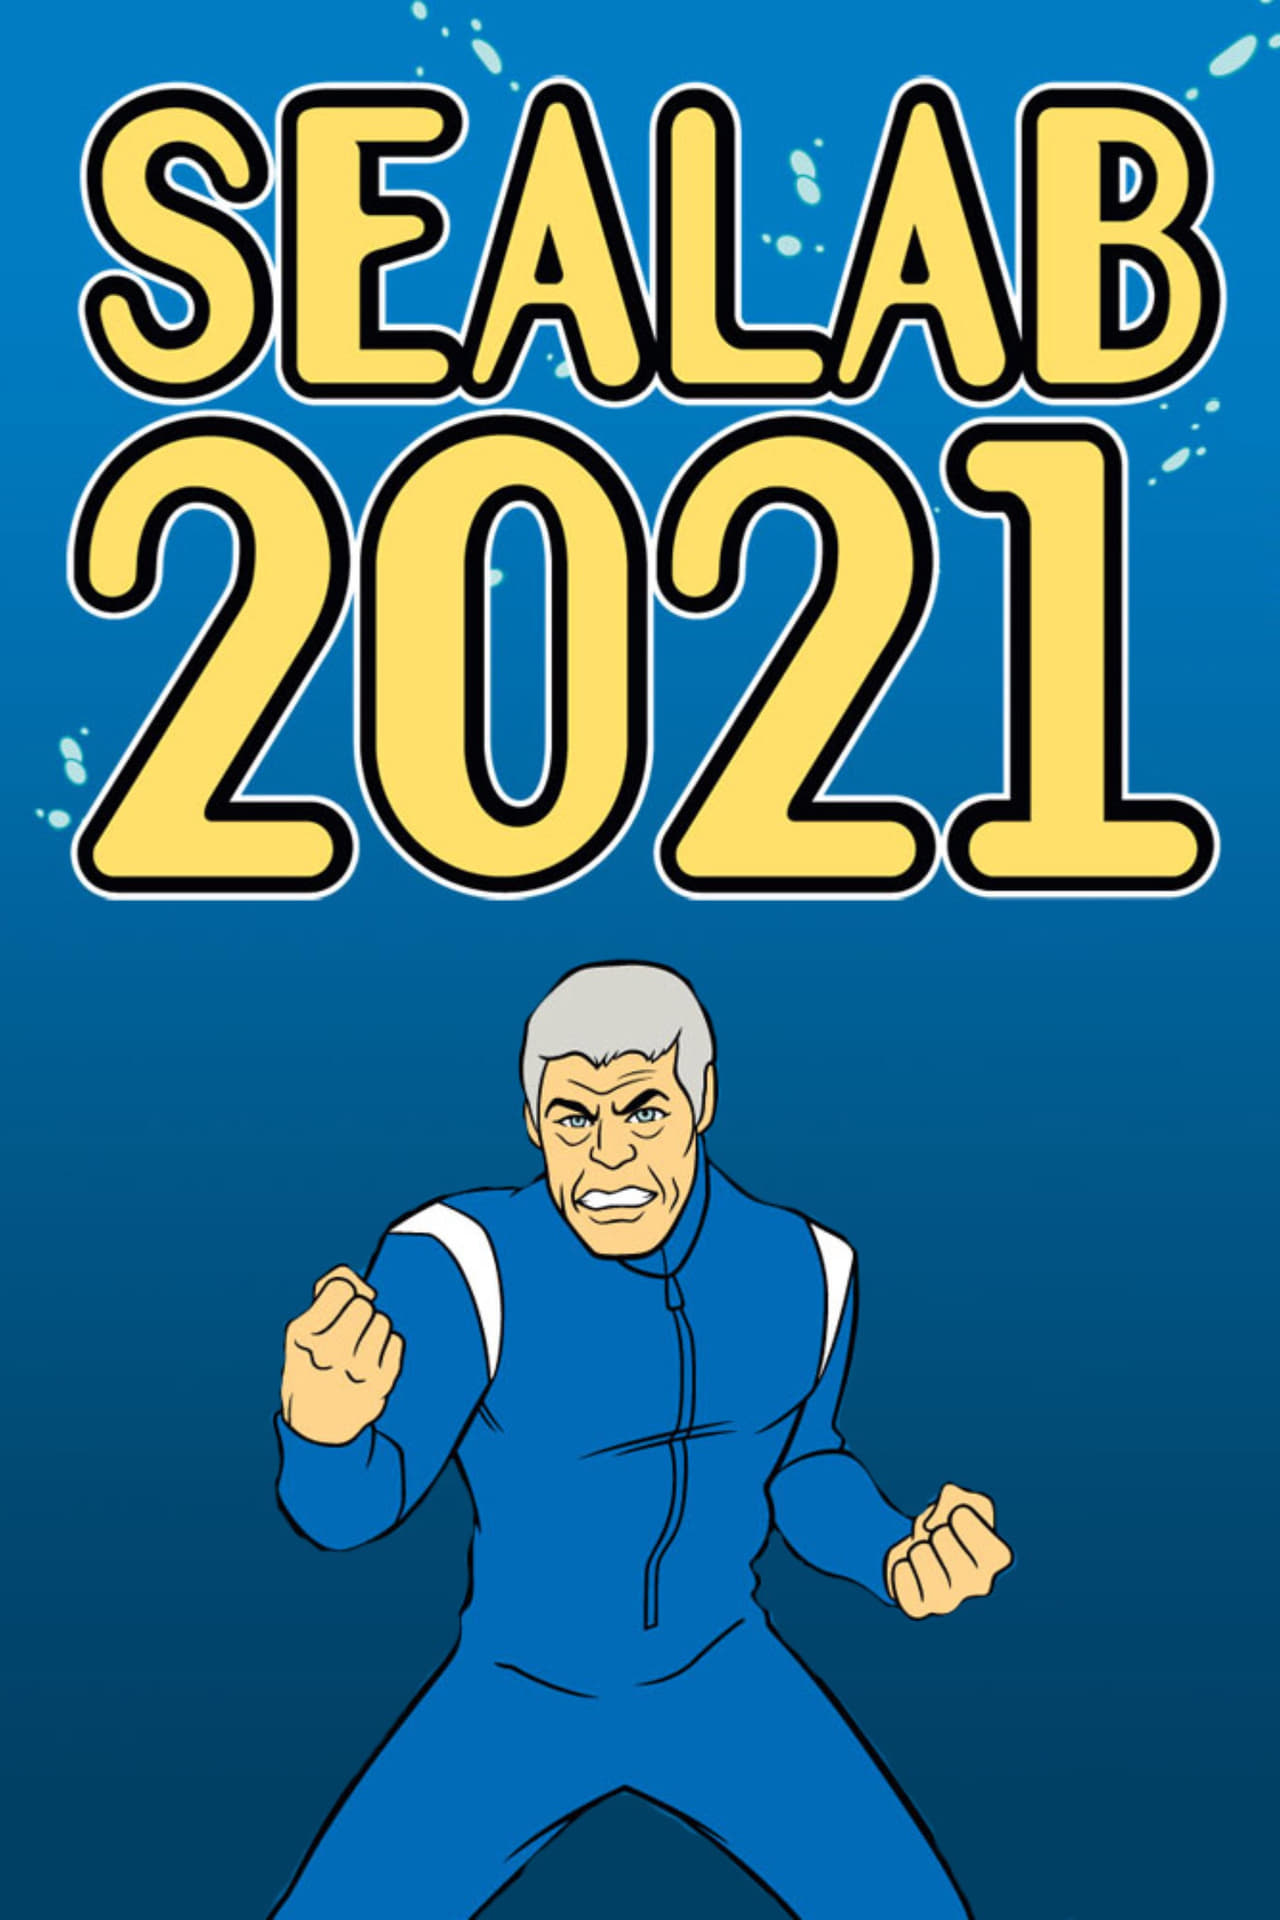 Sealab 2021 (1999)